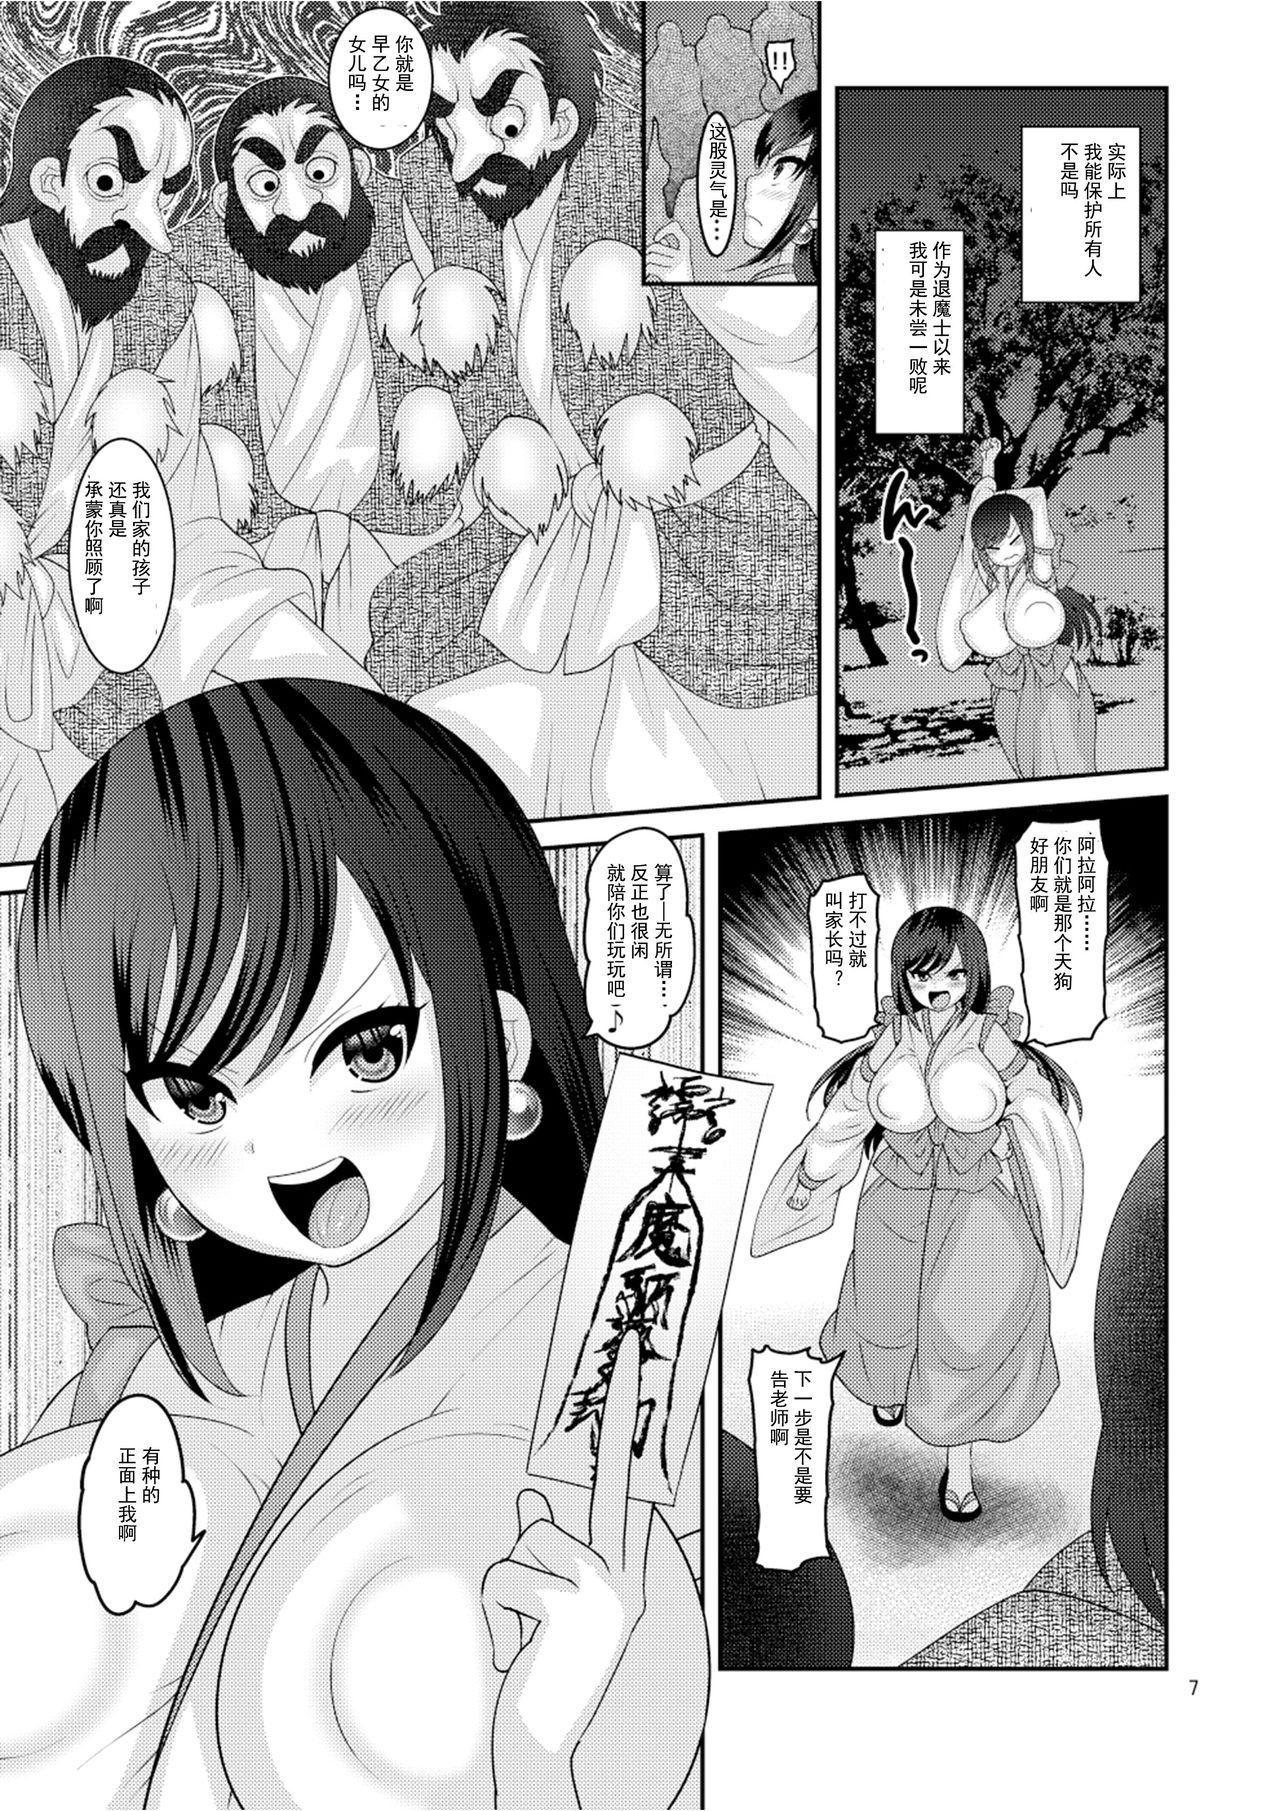 Jockstrap Ochiru Hana - Original Staxxx - Page 7